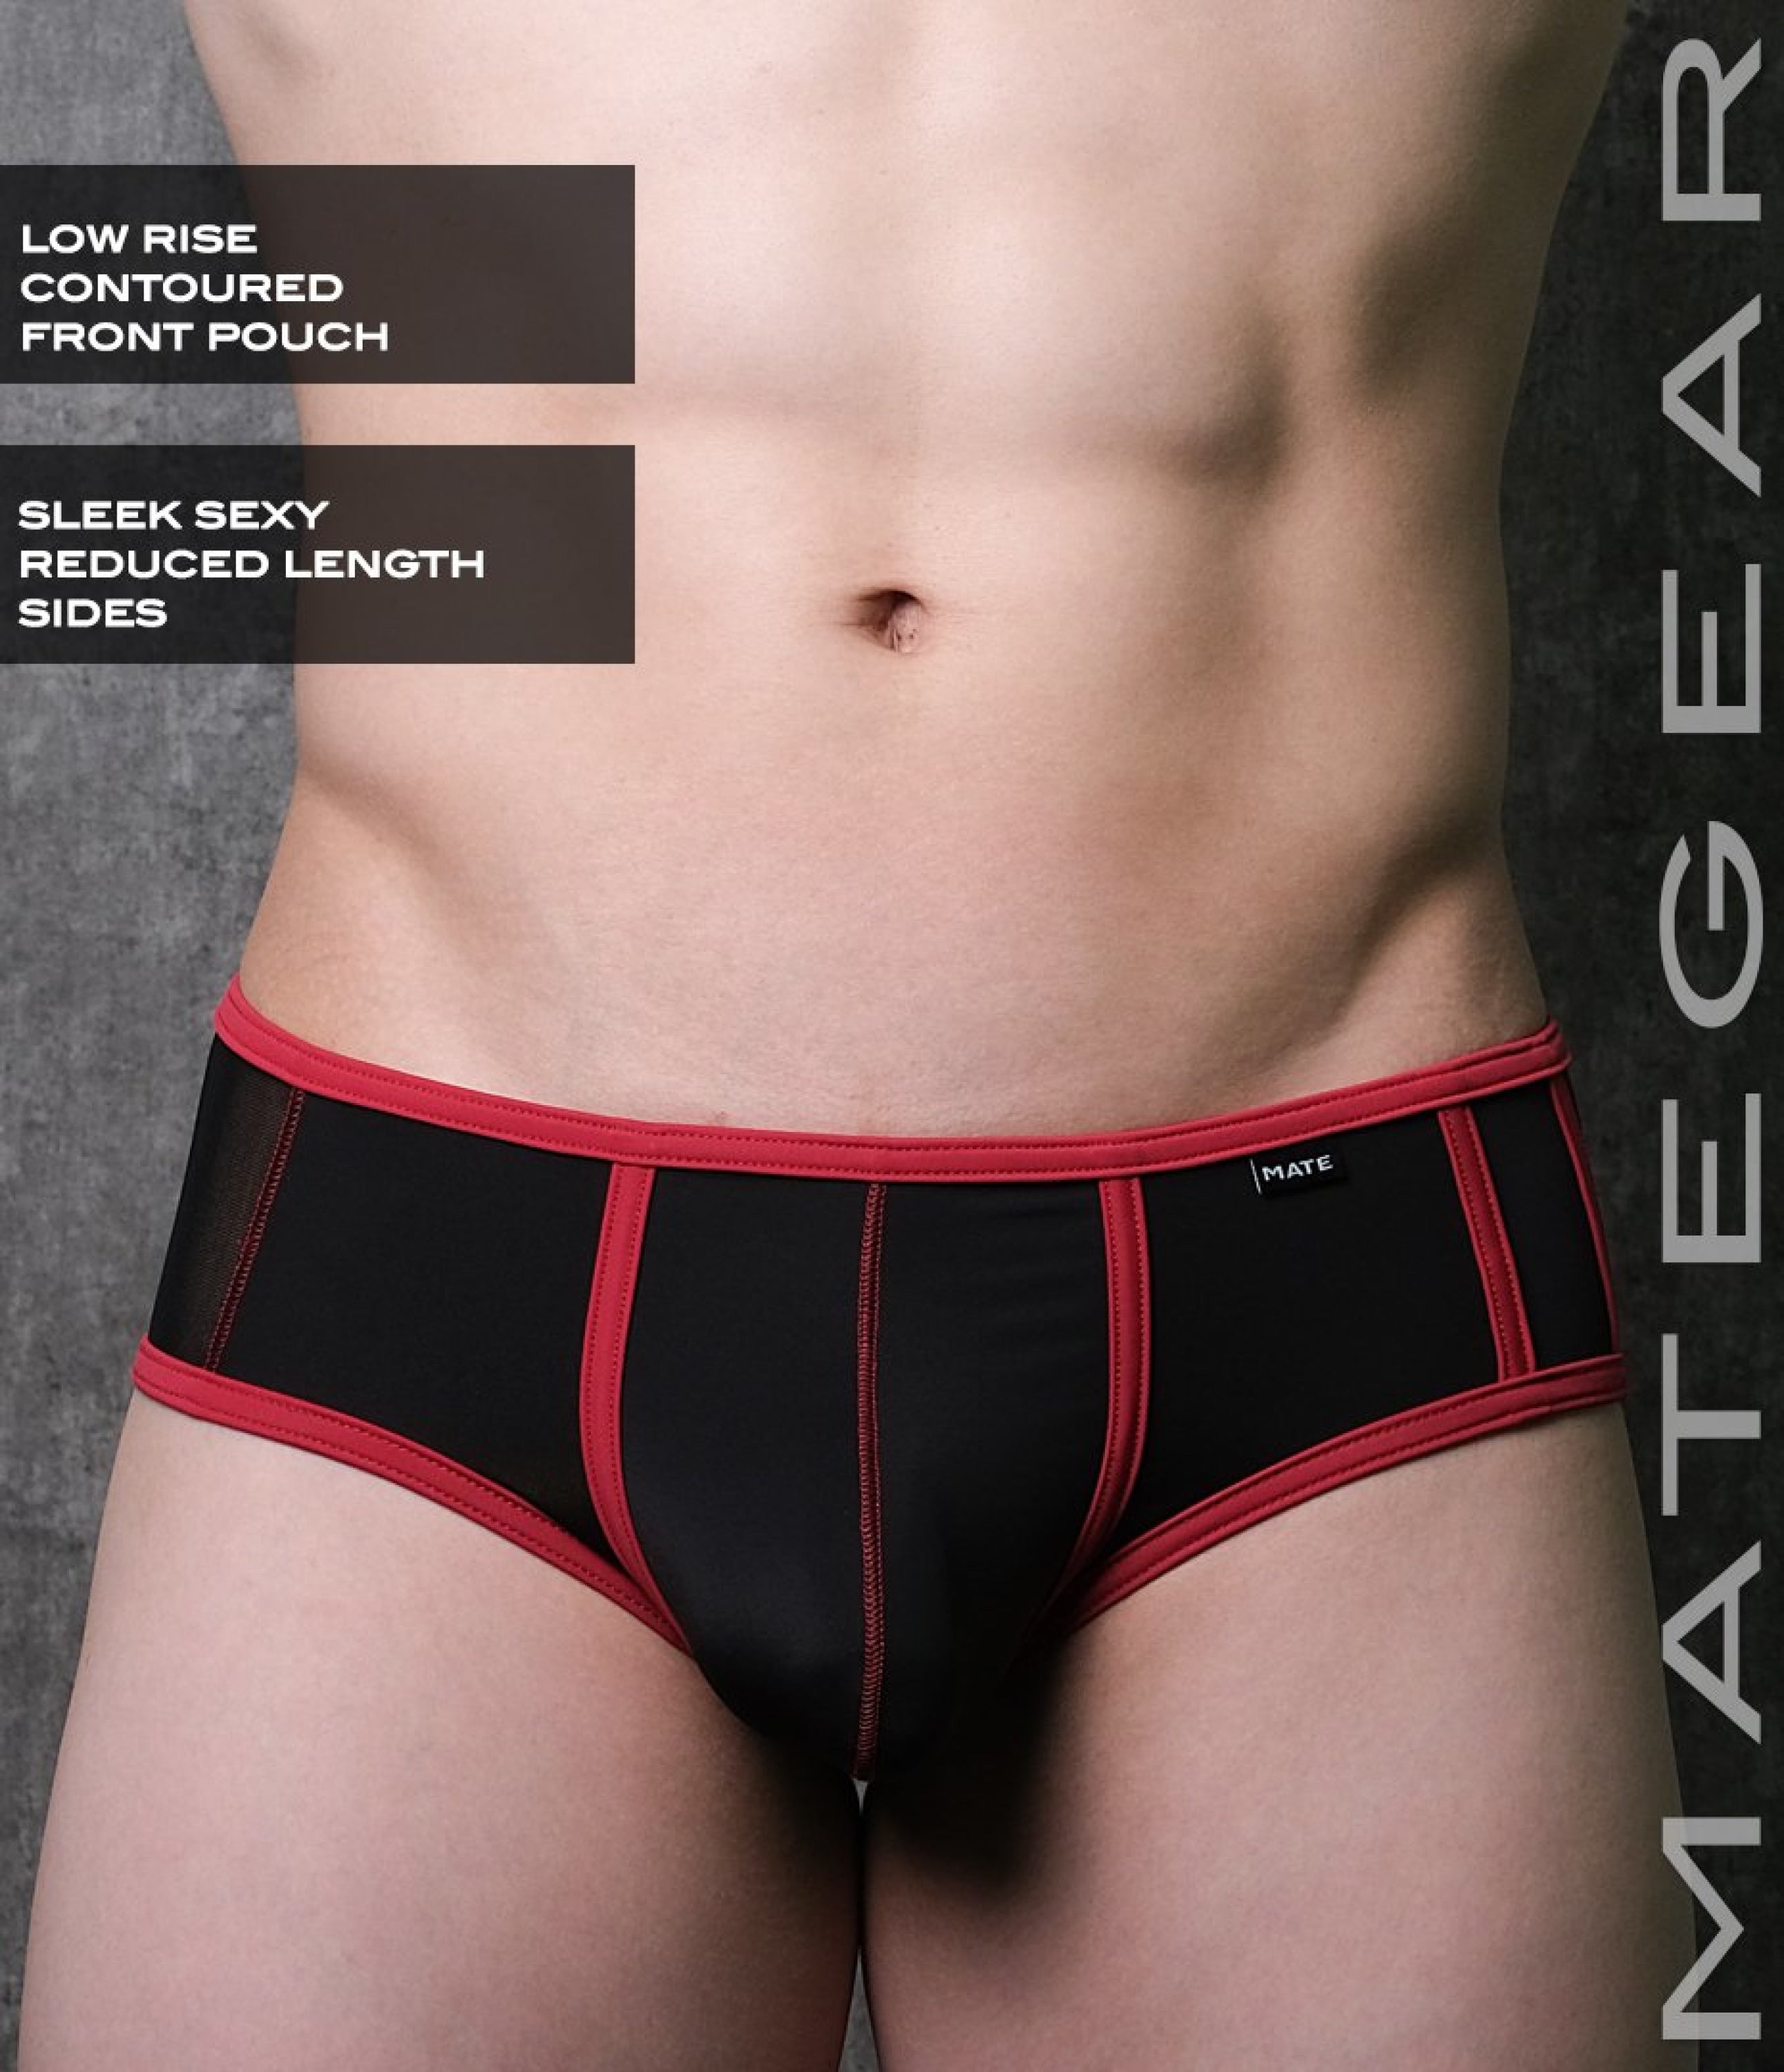 Men's Designer Underwear  Slim-Fit Boxers Pink/Navy Stripe